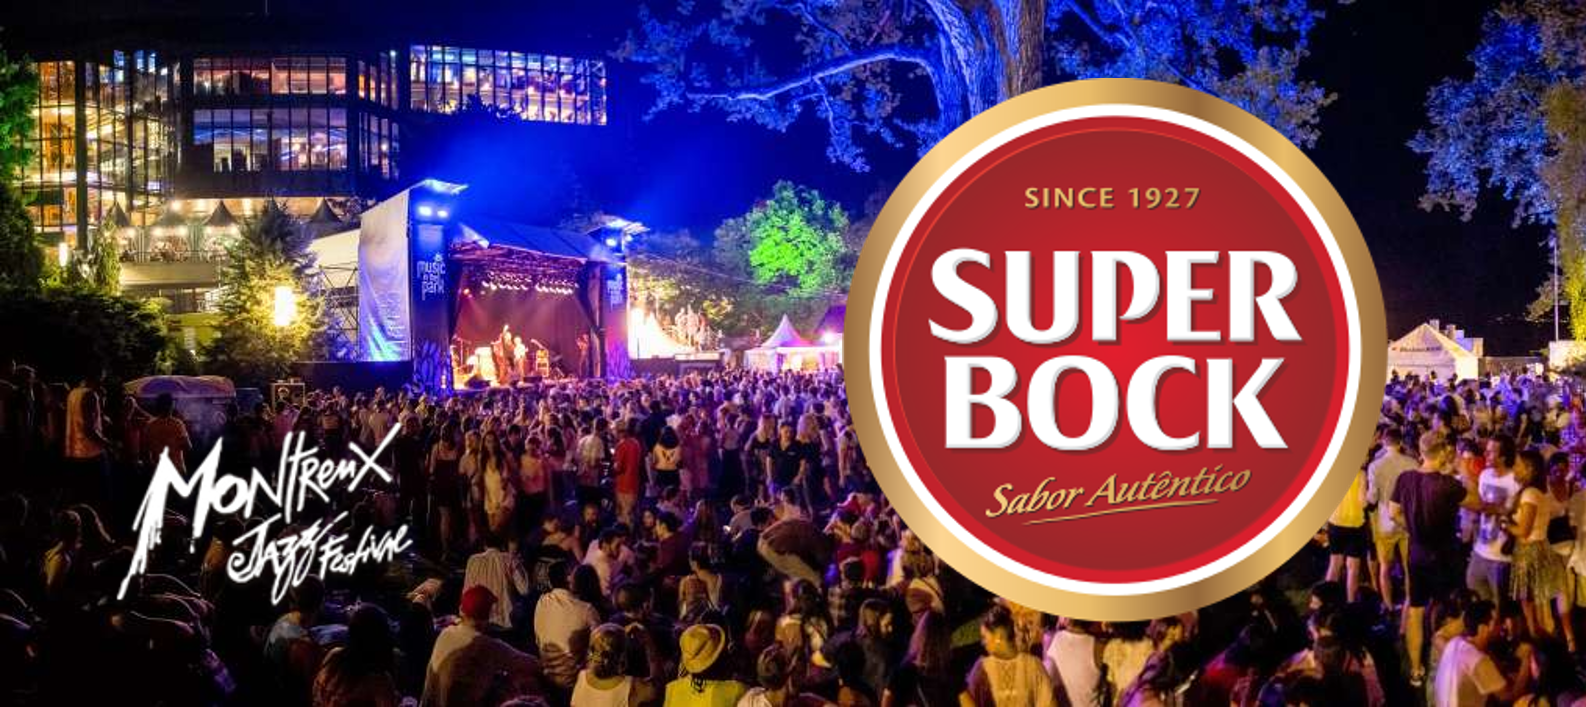 Super Bock é a cerveja oficial do Montreux Jazz Festival